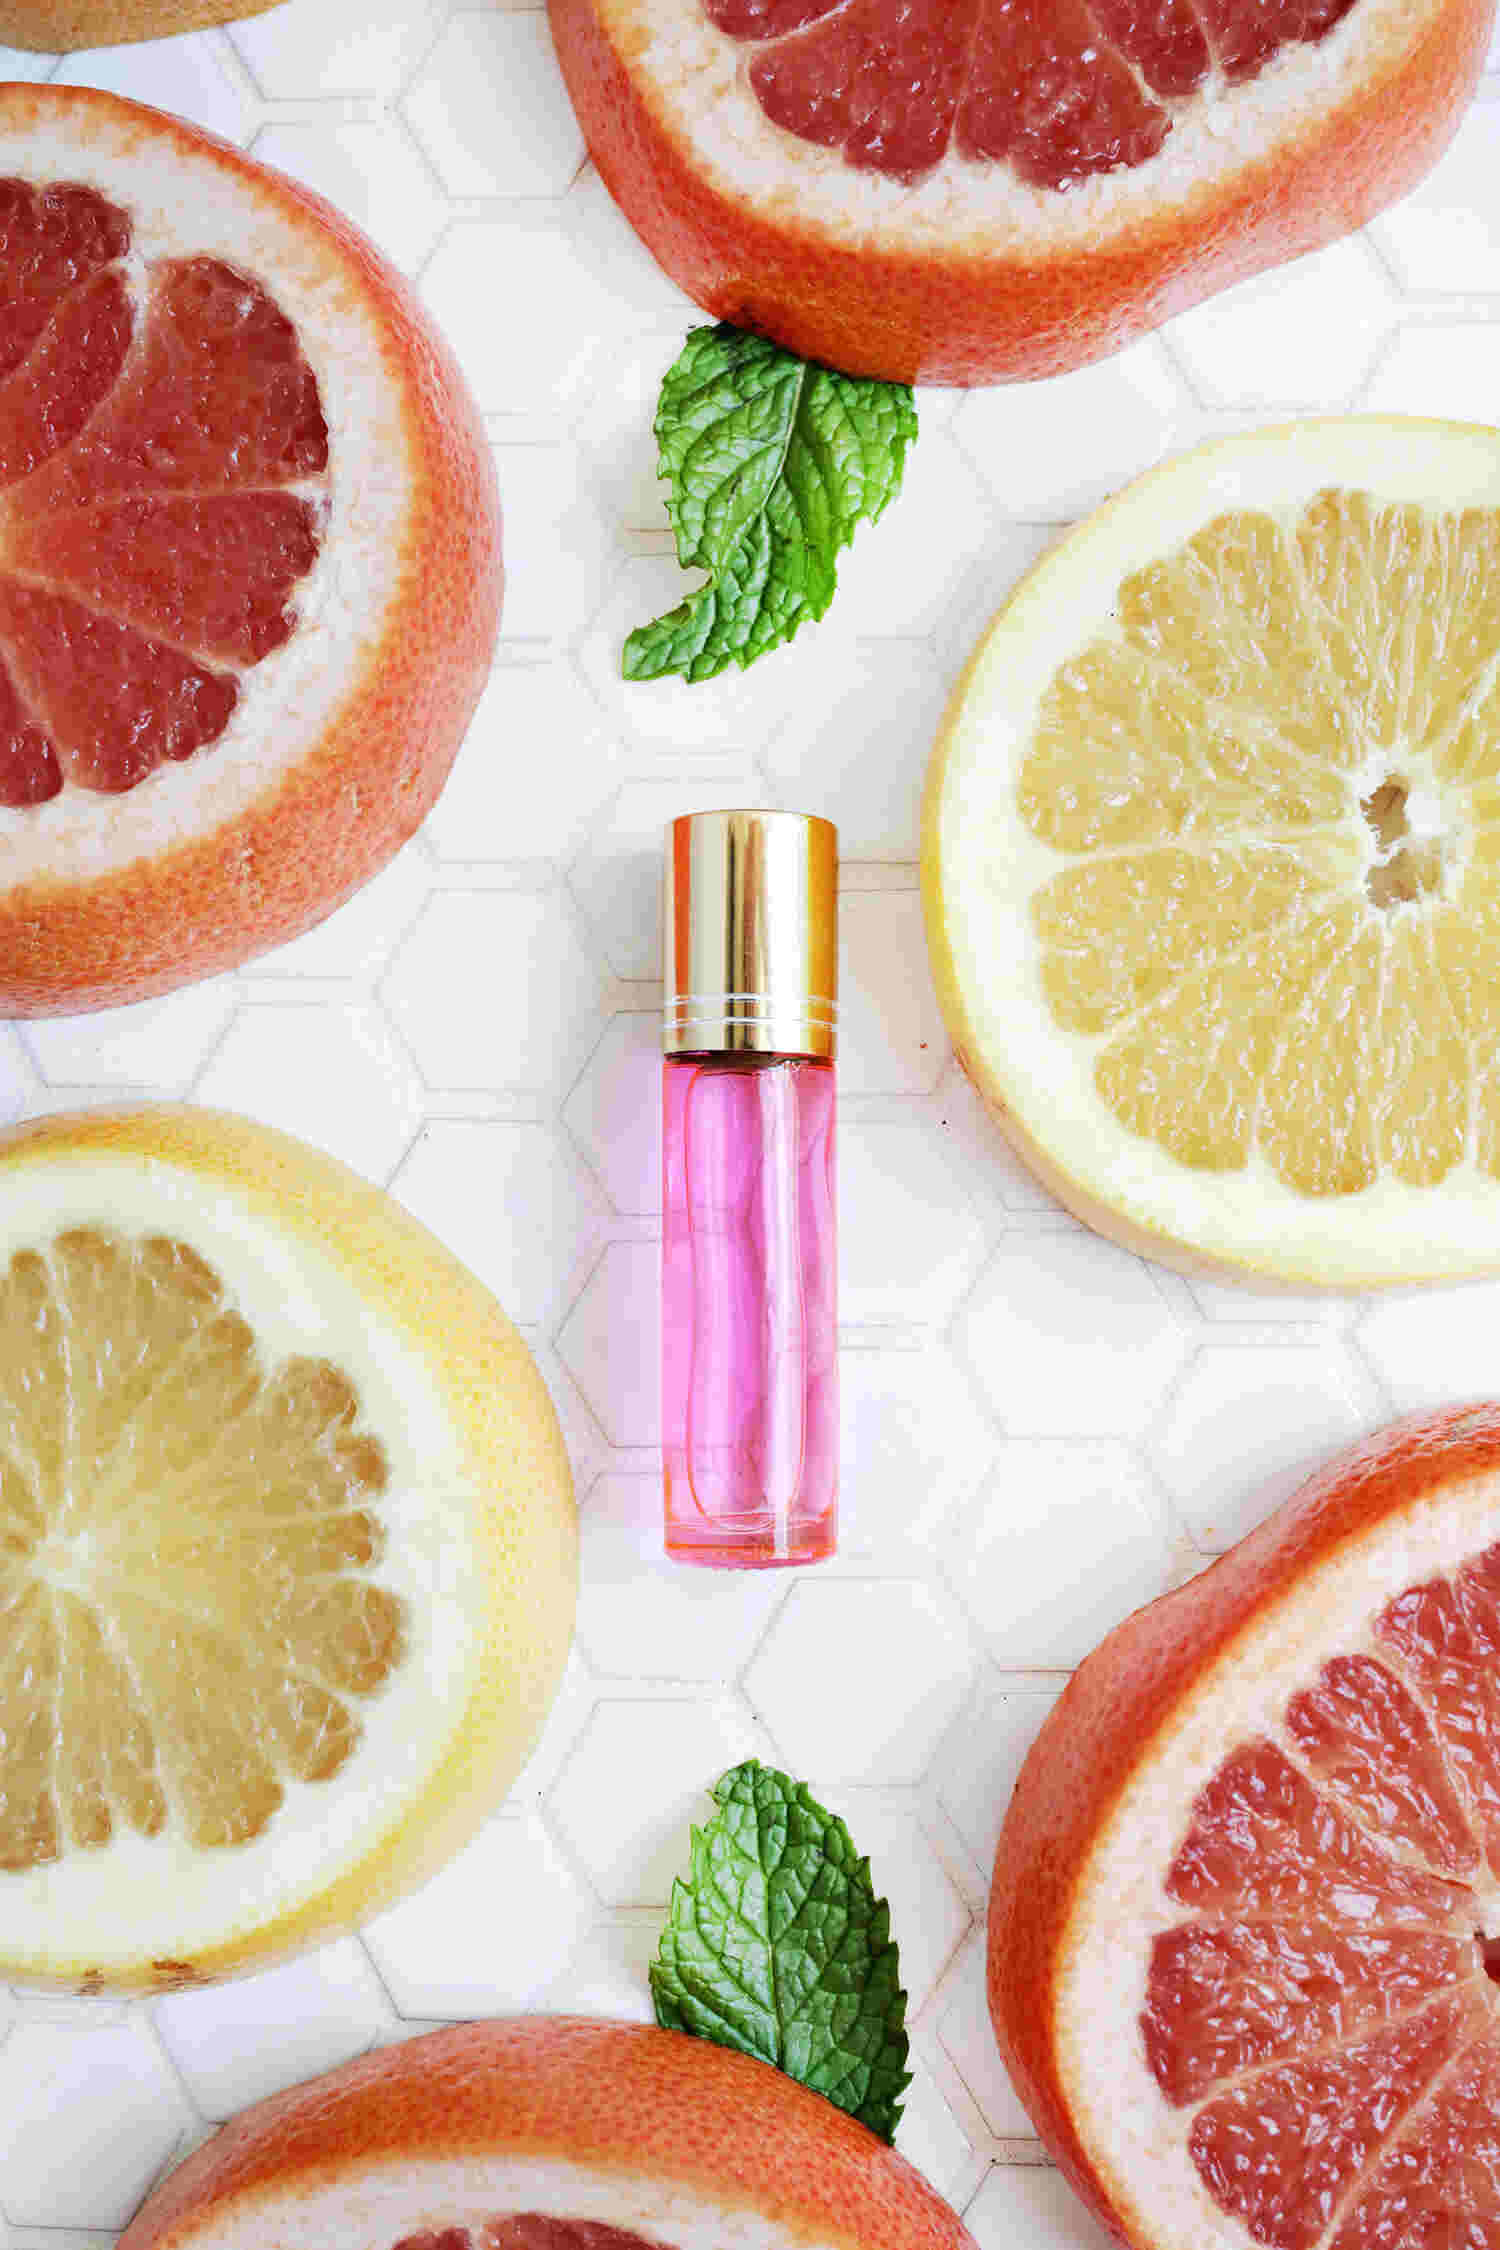 10 Ide Campuran Bahan Alami untuk Membuat Parfum, Bye-Bye Bahan Kimia